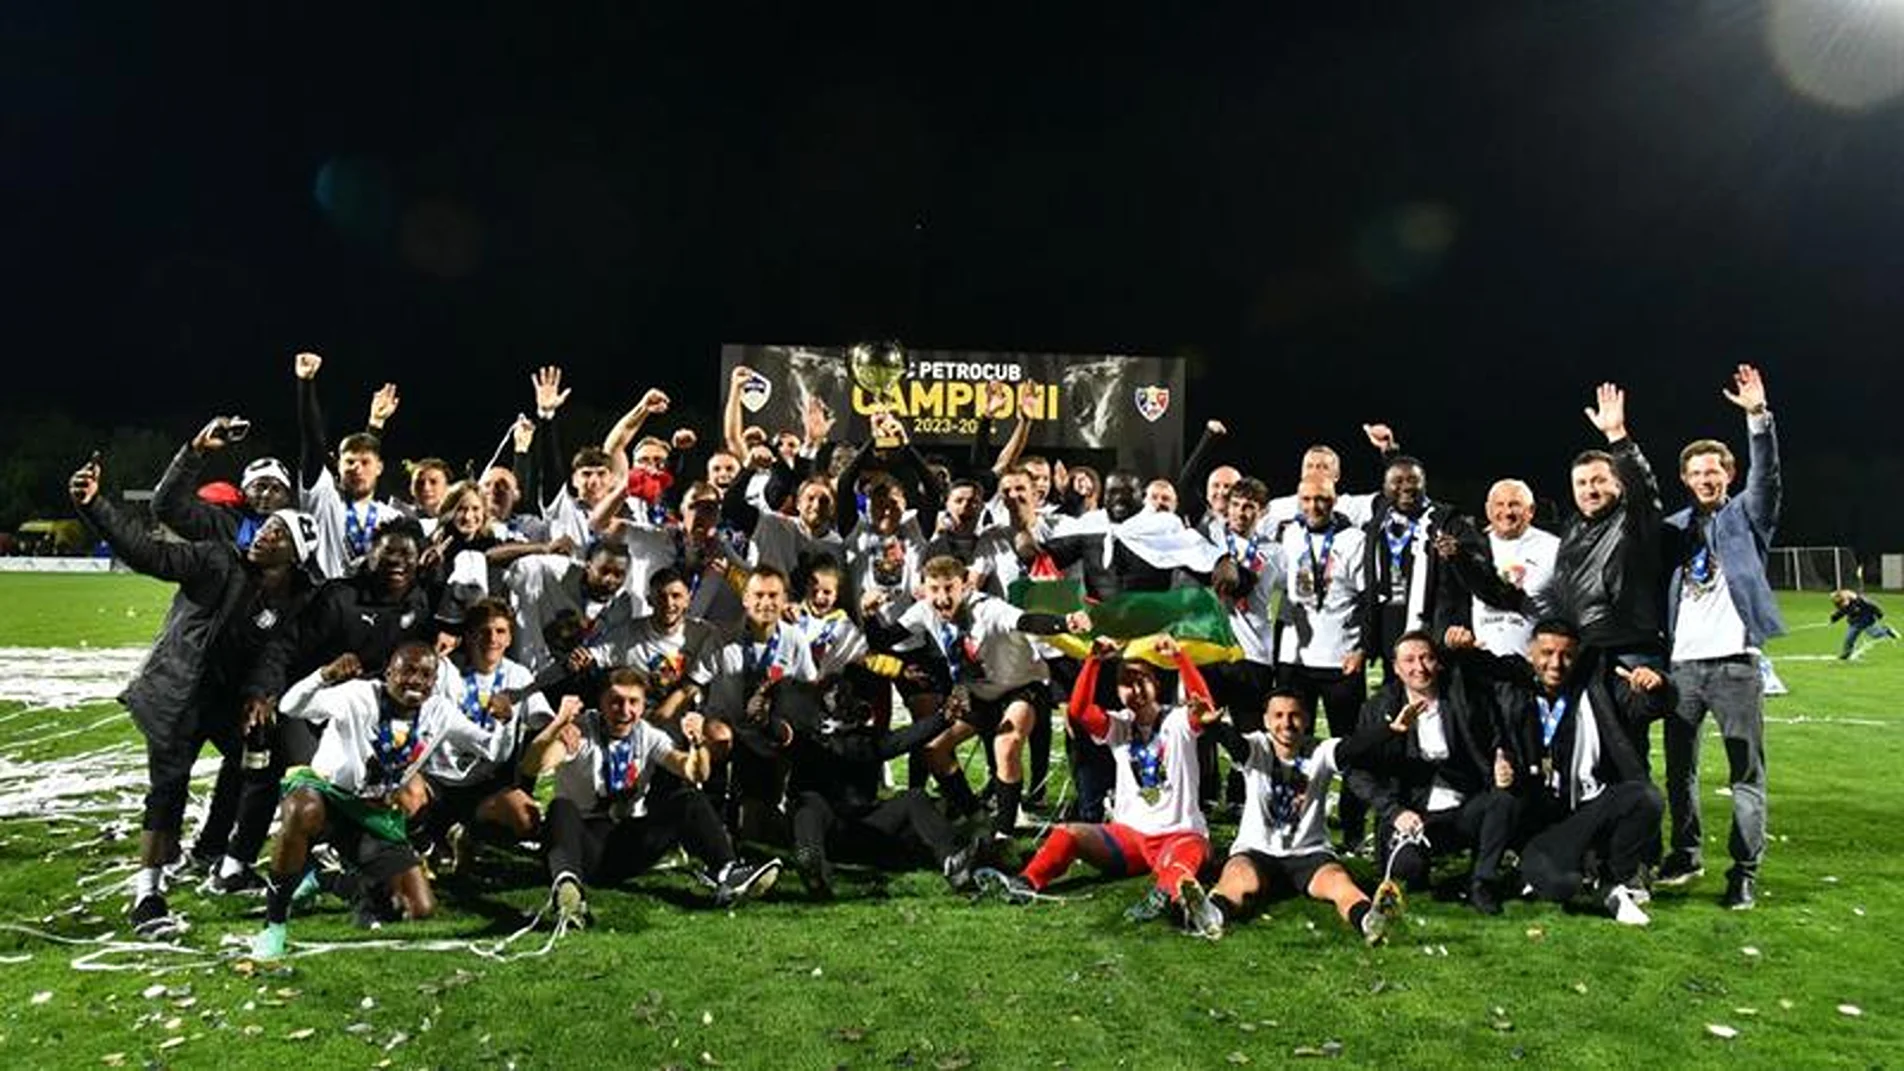 Marea revelație a fotbalului din Republica Moldova, Petrocub Hîncești, a primit trofeul